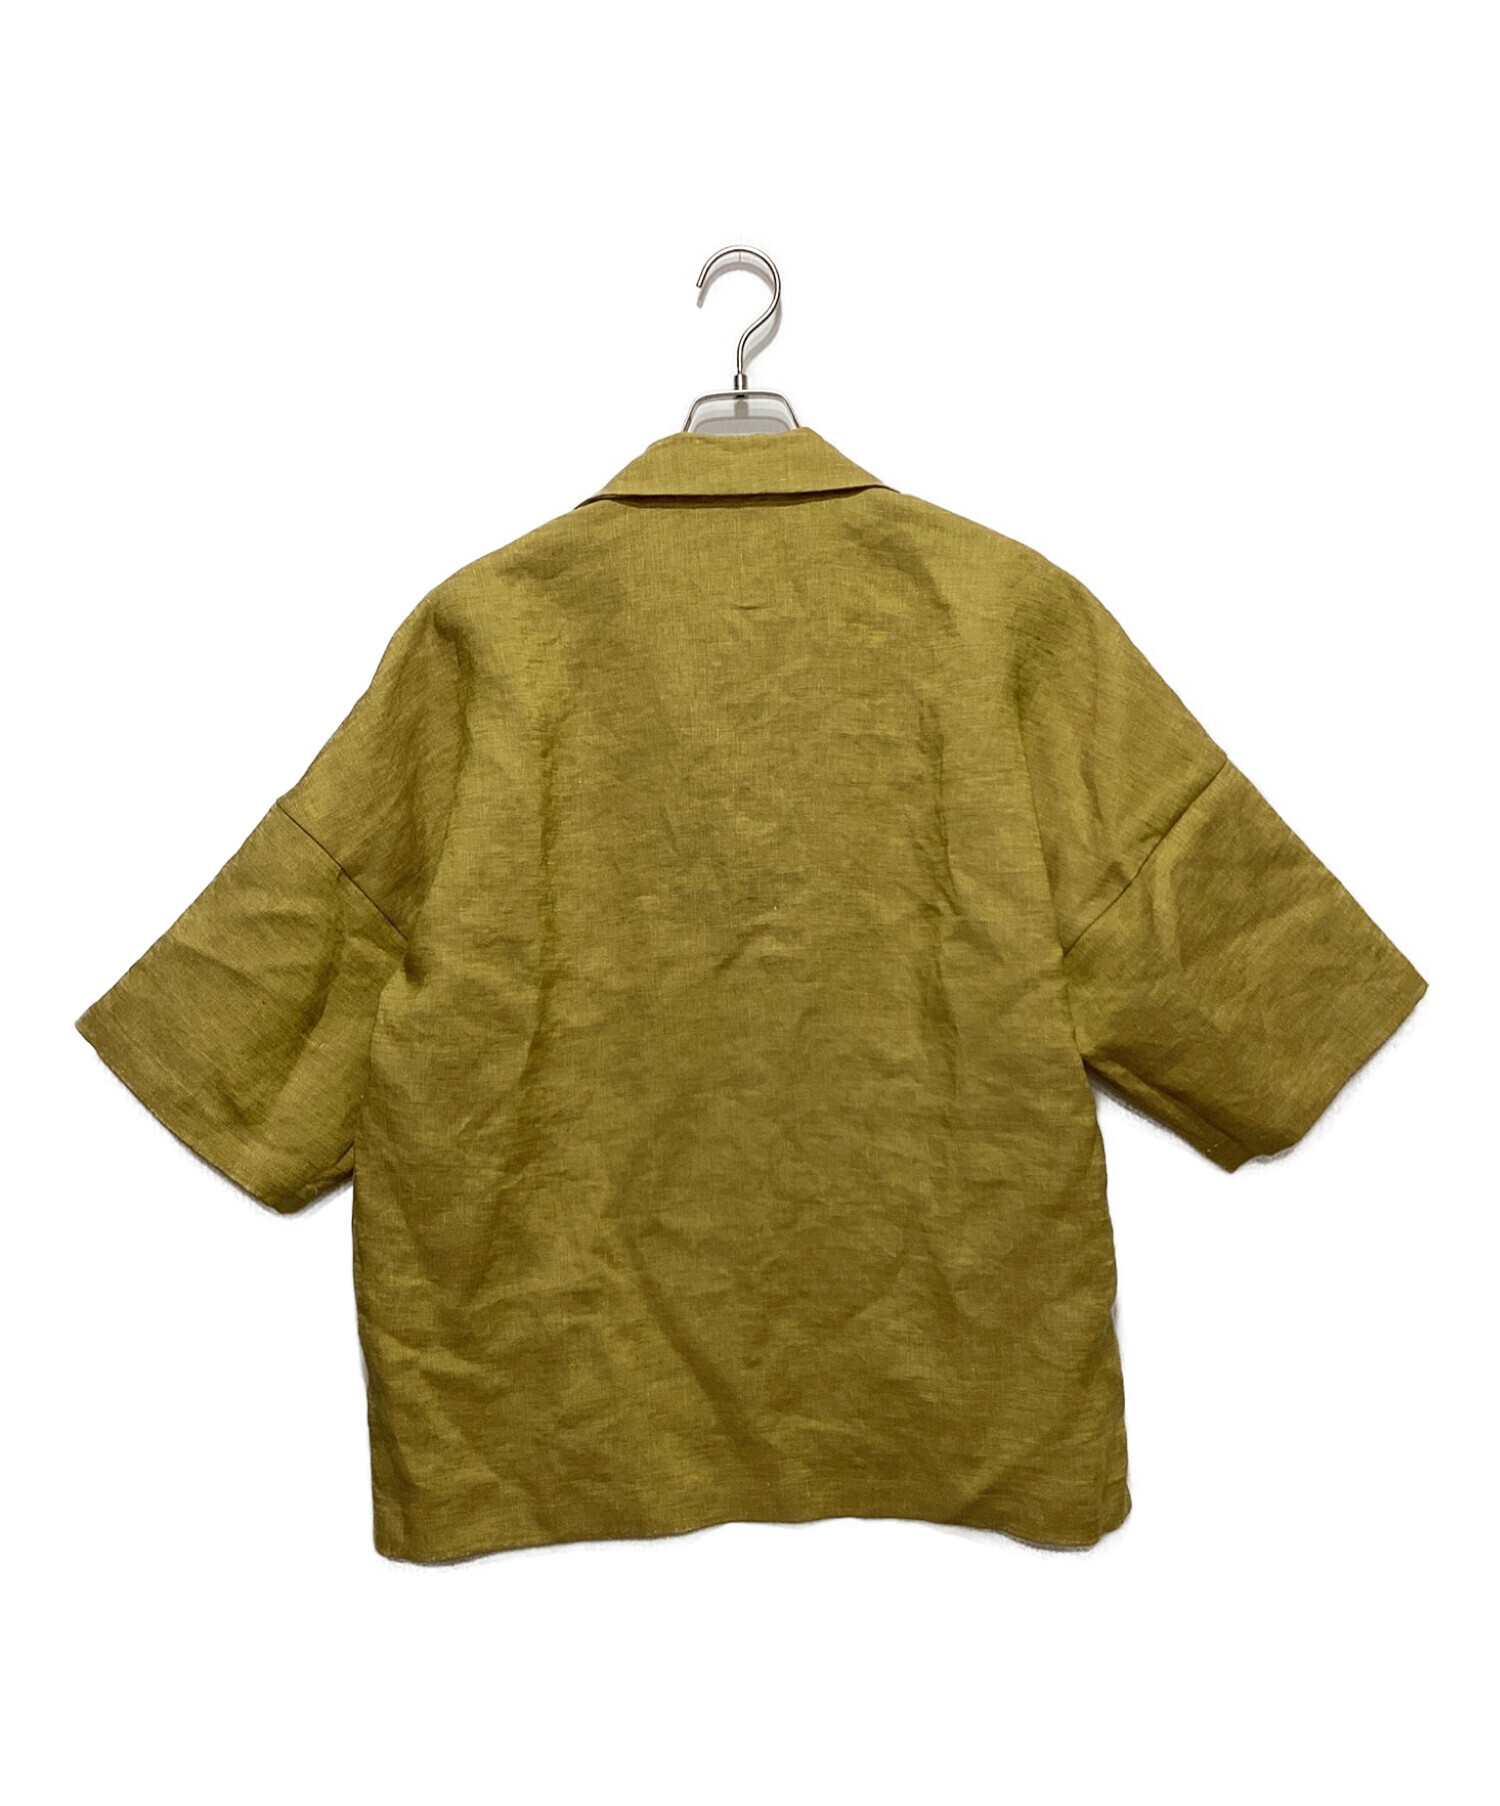 SUNSEA (サンシー) リバーシブルオープンカラーシャツ イエロー サイズ:3